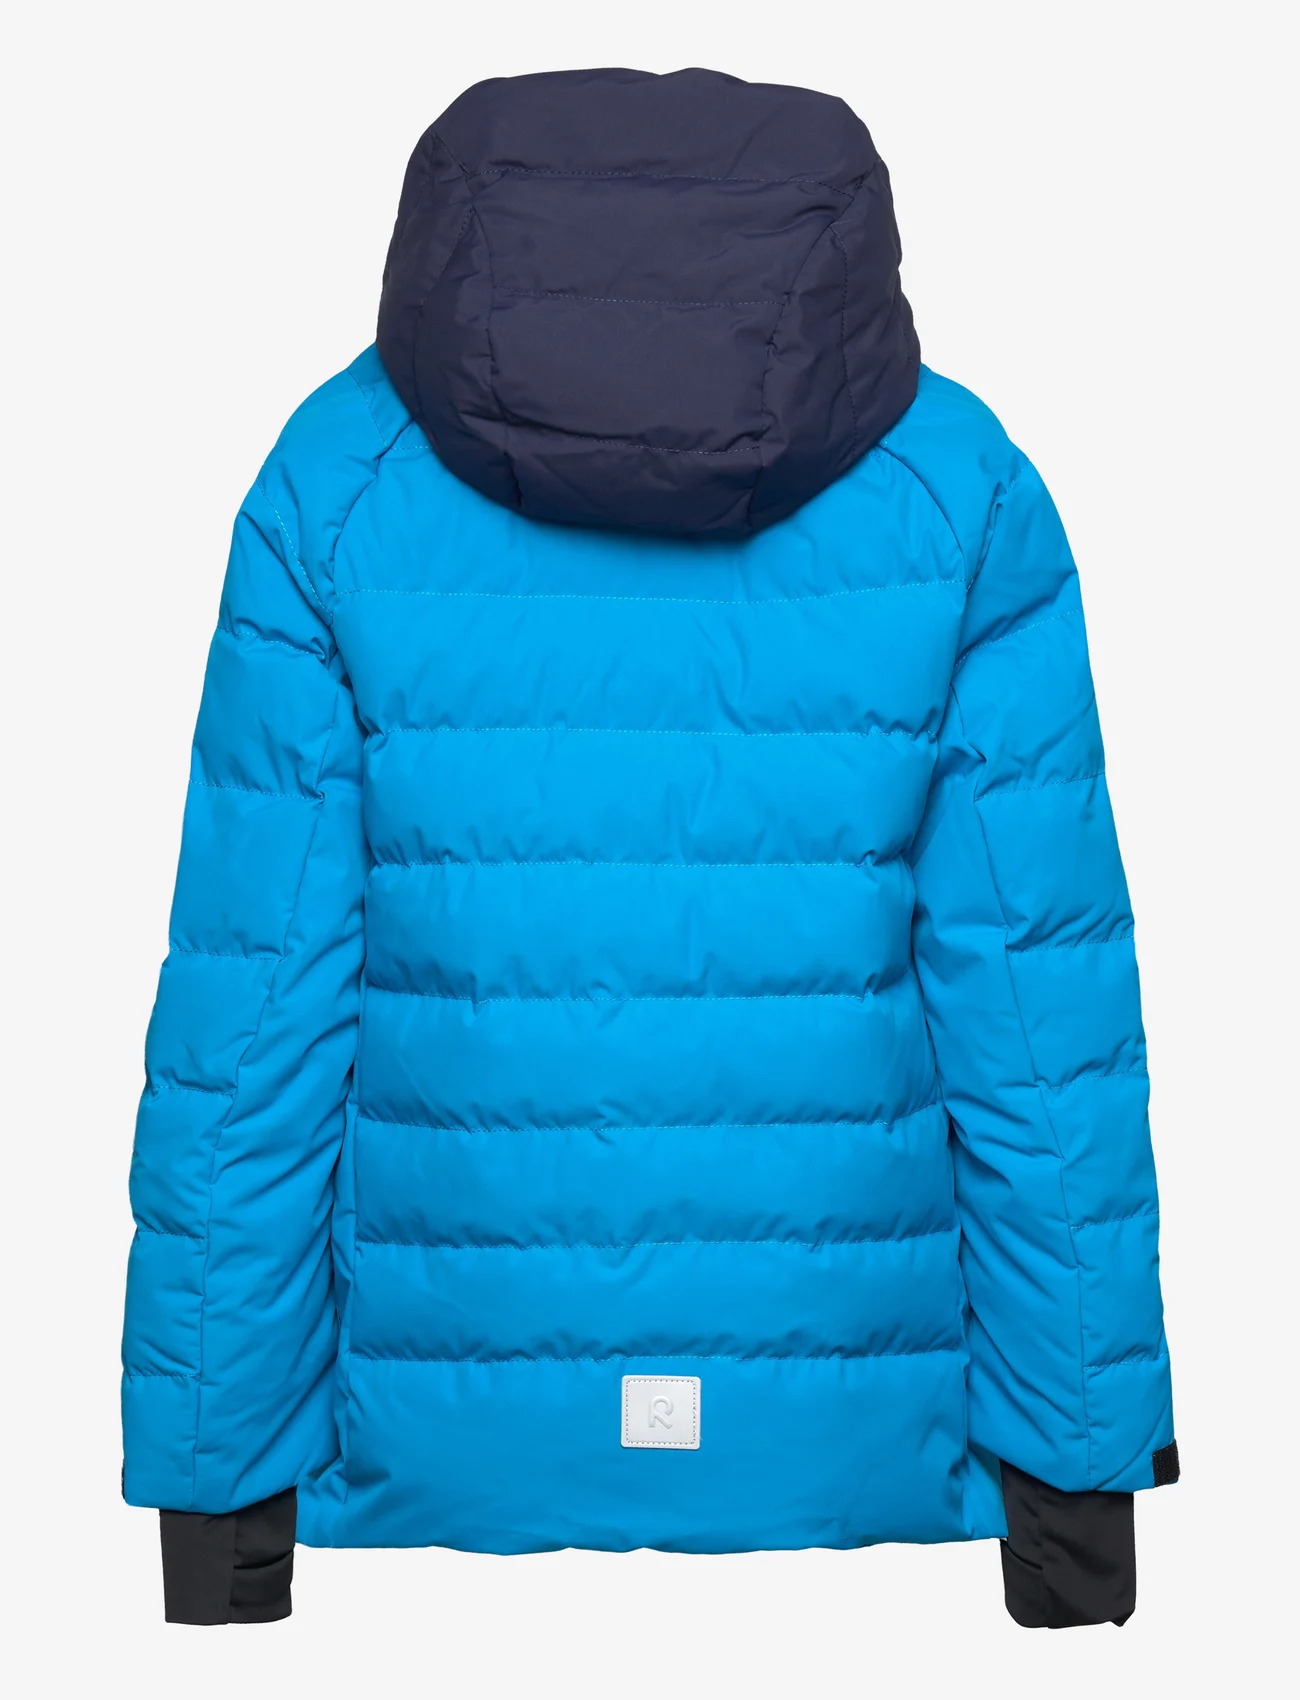 Reima - Juniors' Winter jacket Kuosku - dūnu jakas - true blue - 1